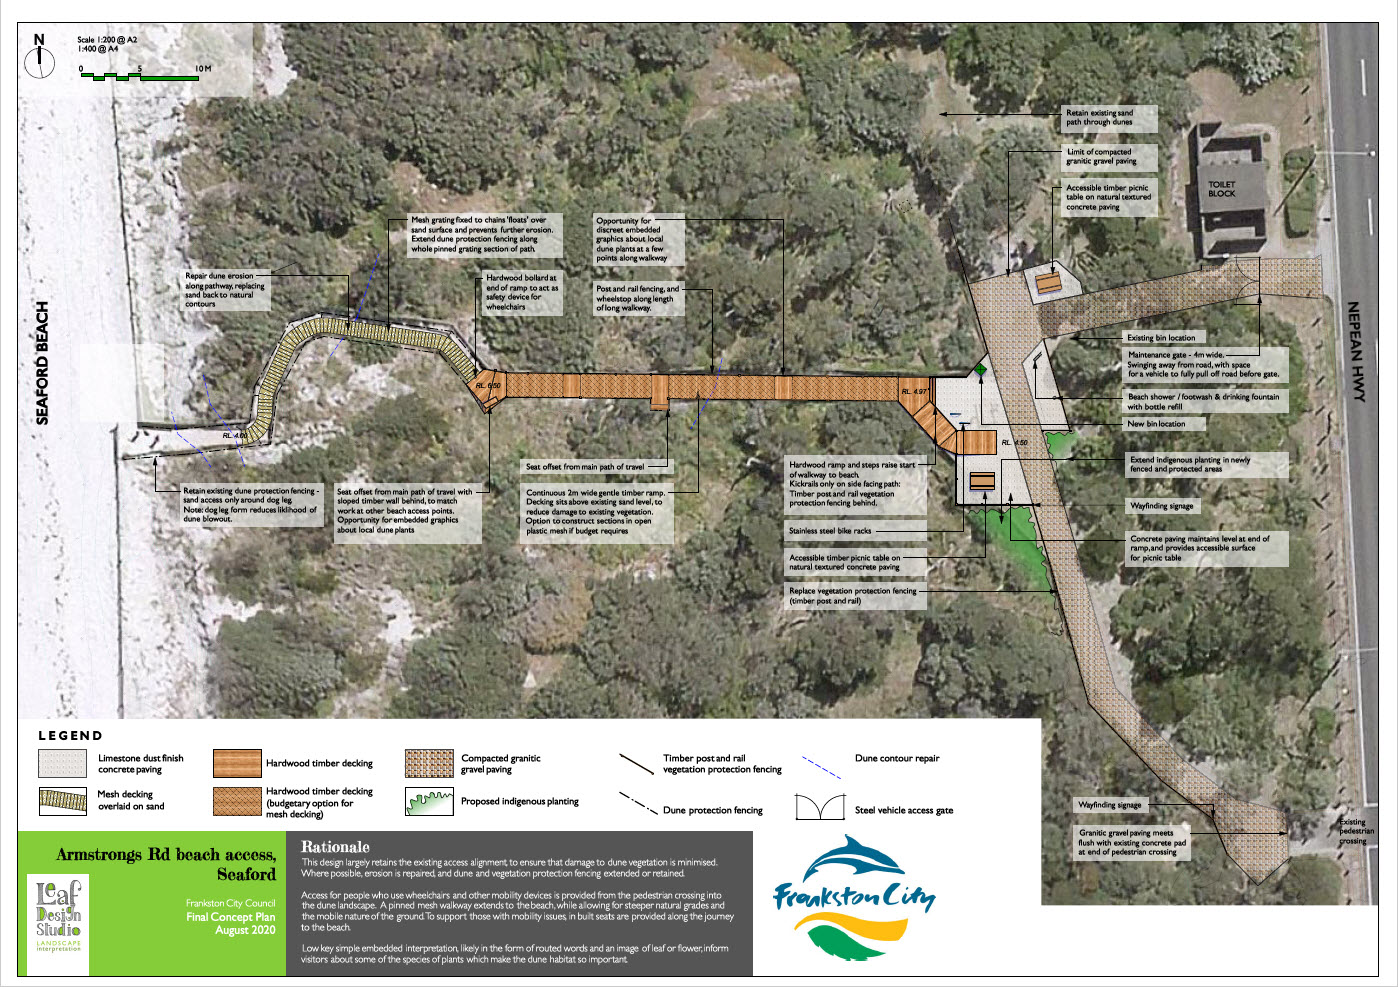 Seaford_Foreshore_Beach_Access_Concept_Plan.jpg